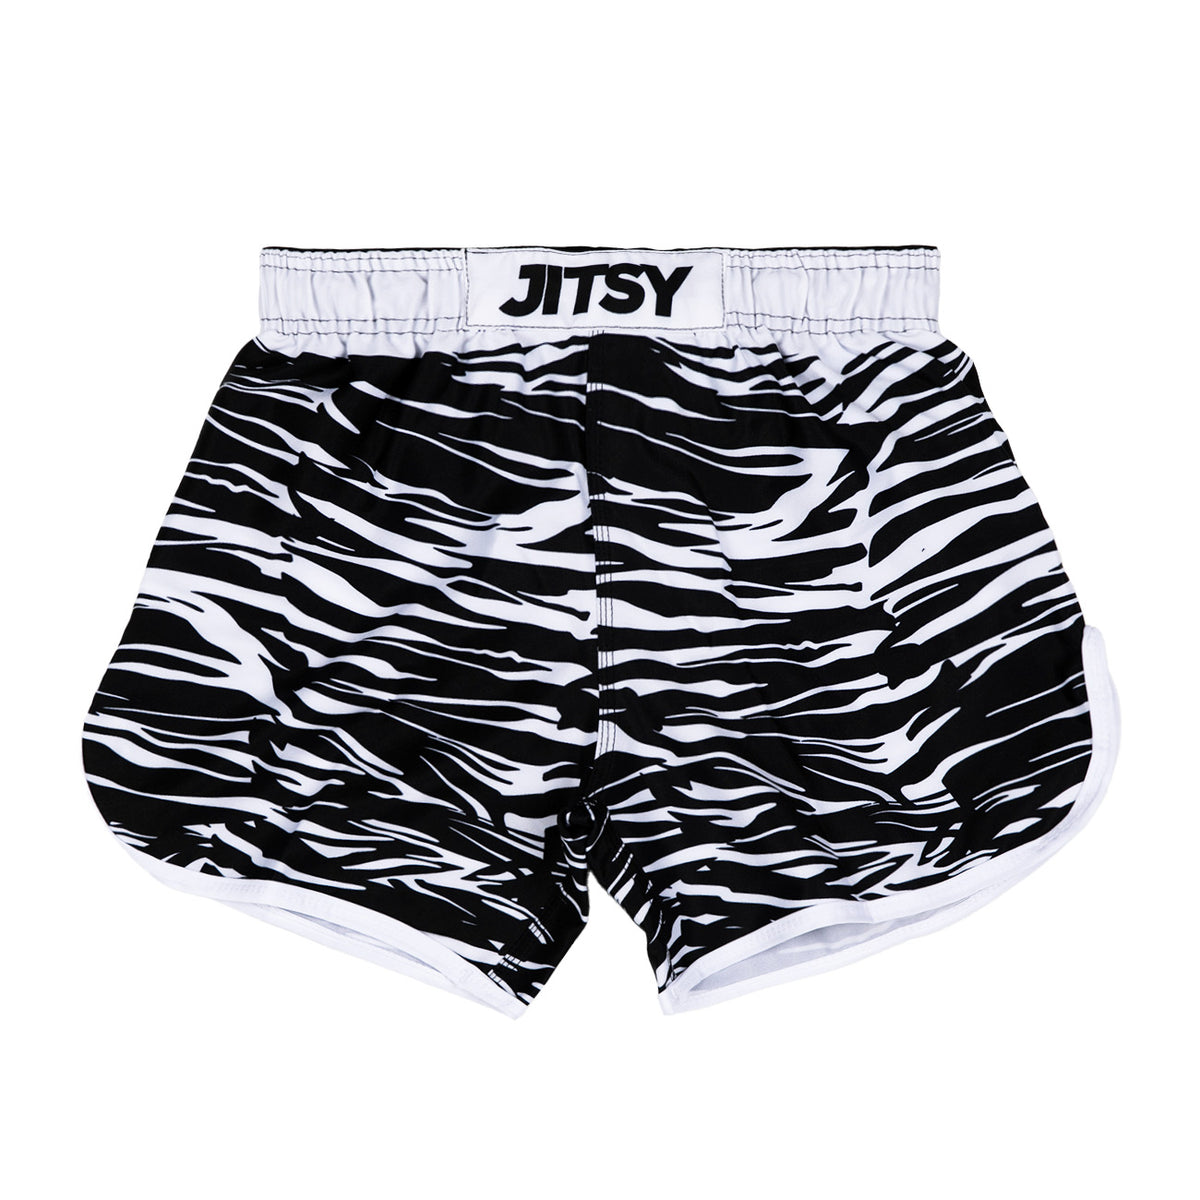 Jitsy Hybrid Shorts Magnum - Men